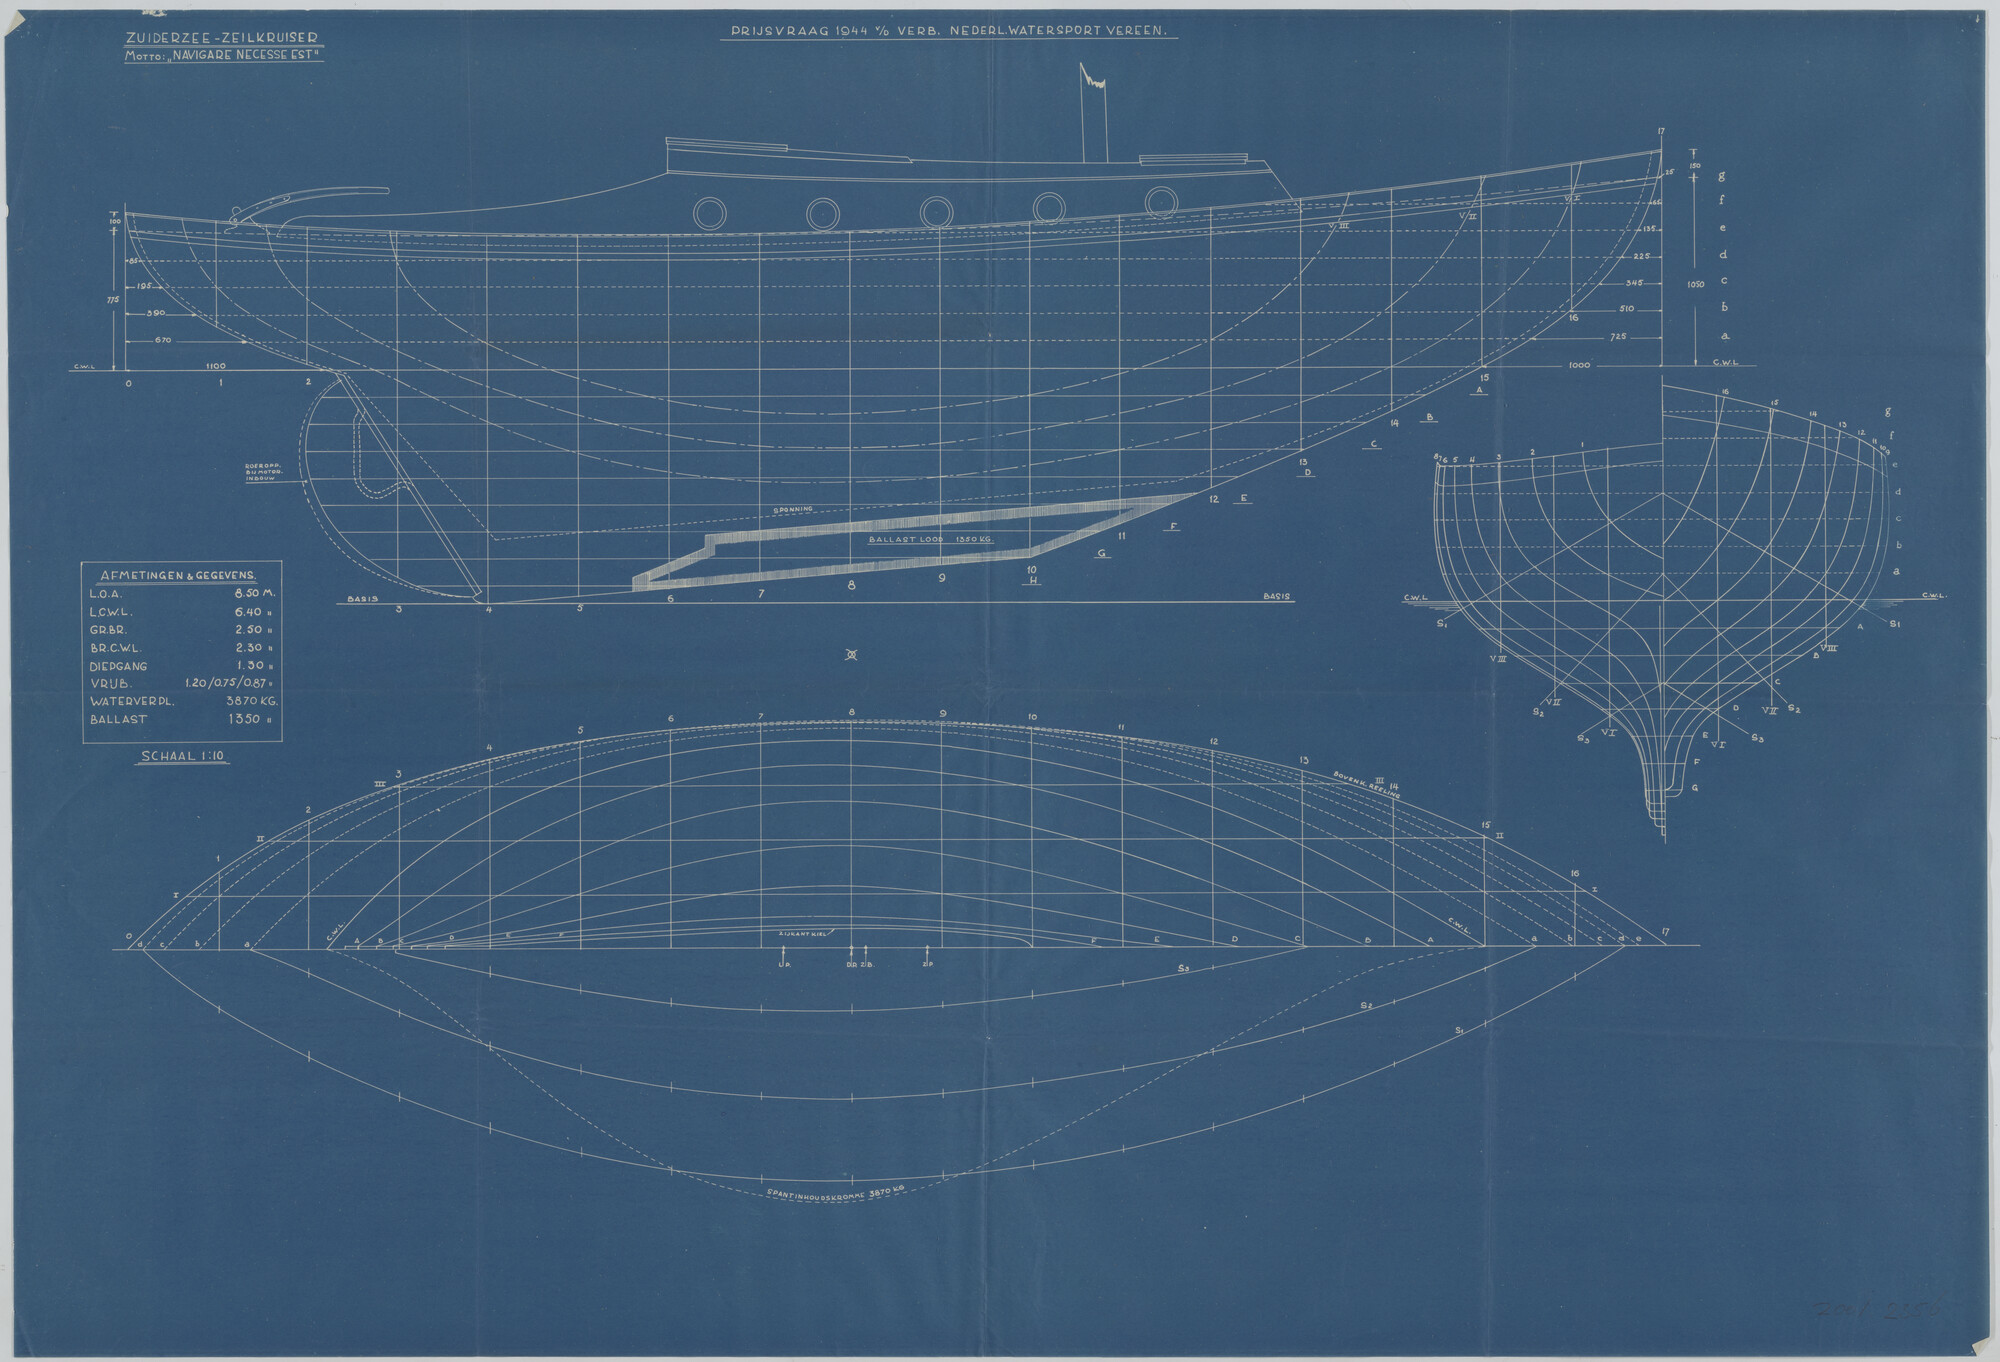 2001.2356; Constructietekening van een Zuiderzee-zeilkruiser; technische tekening